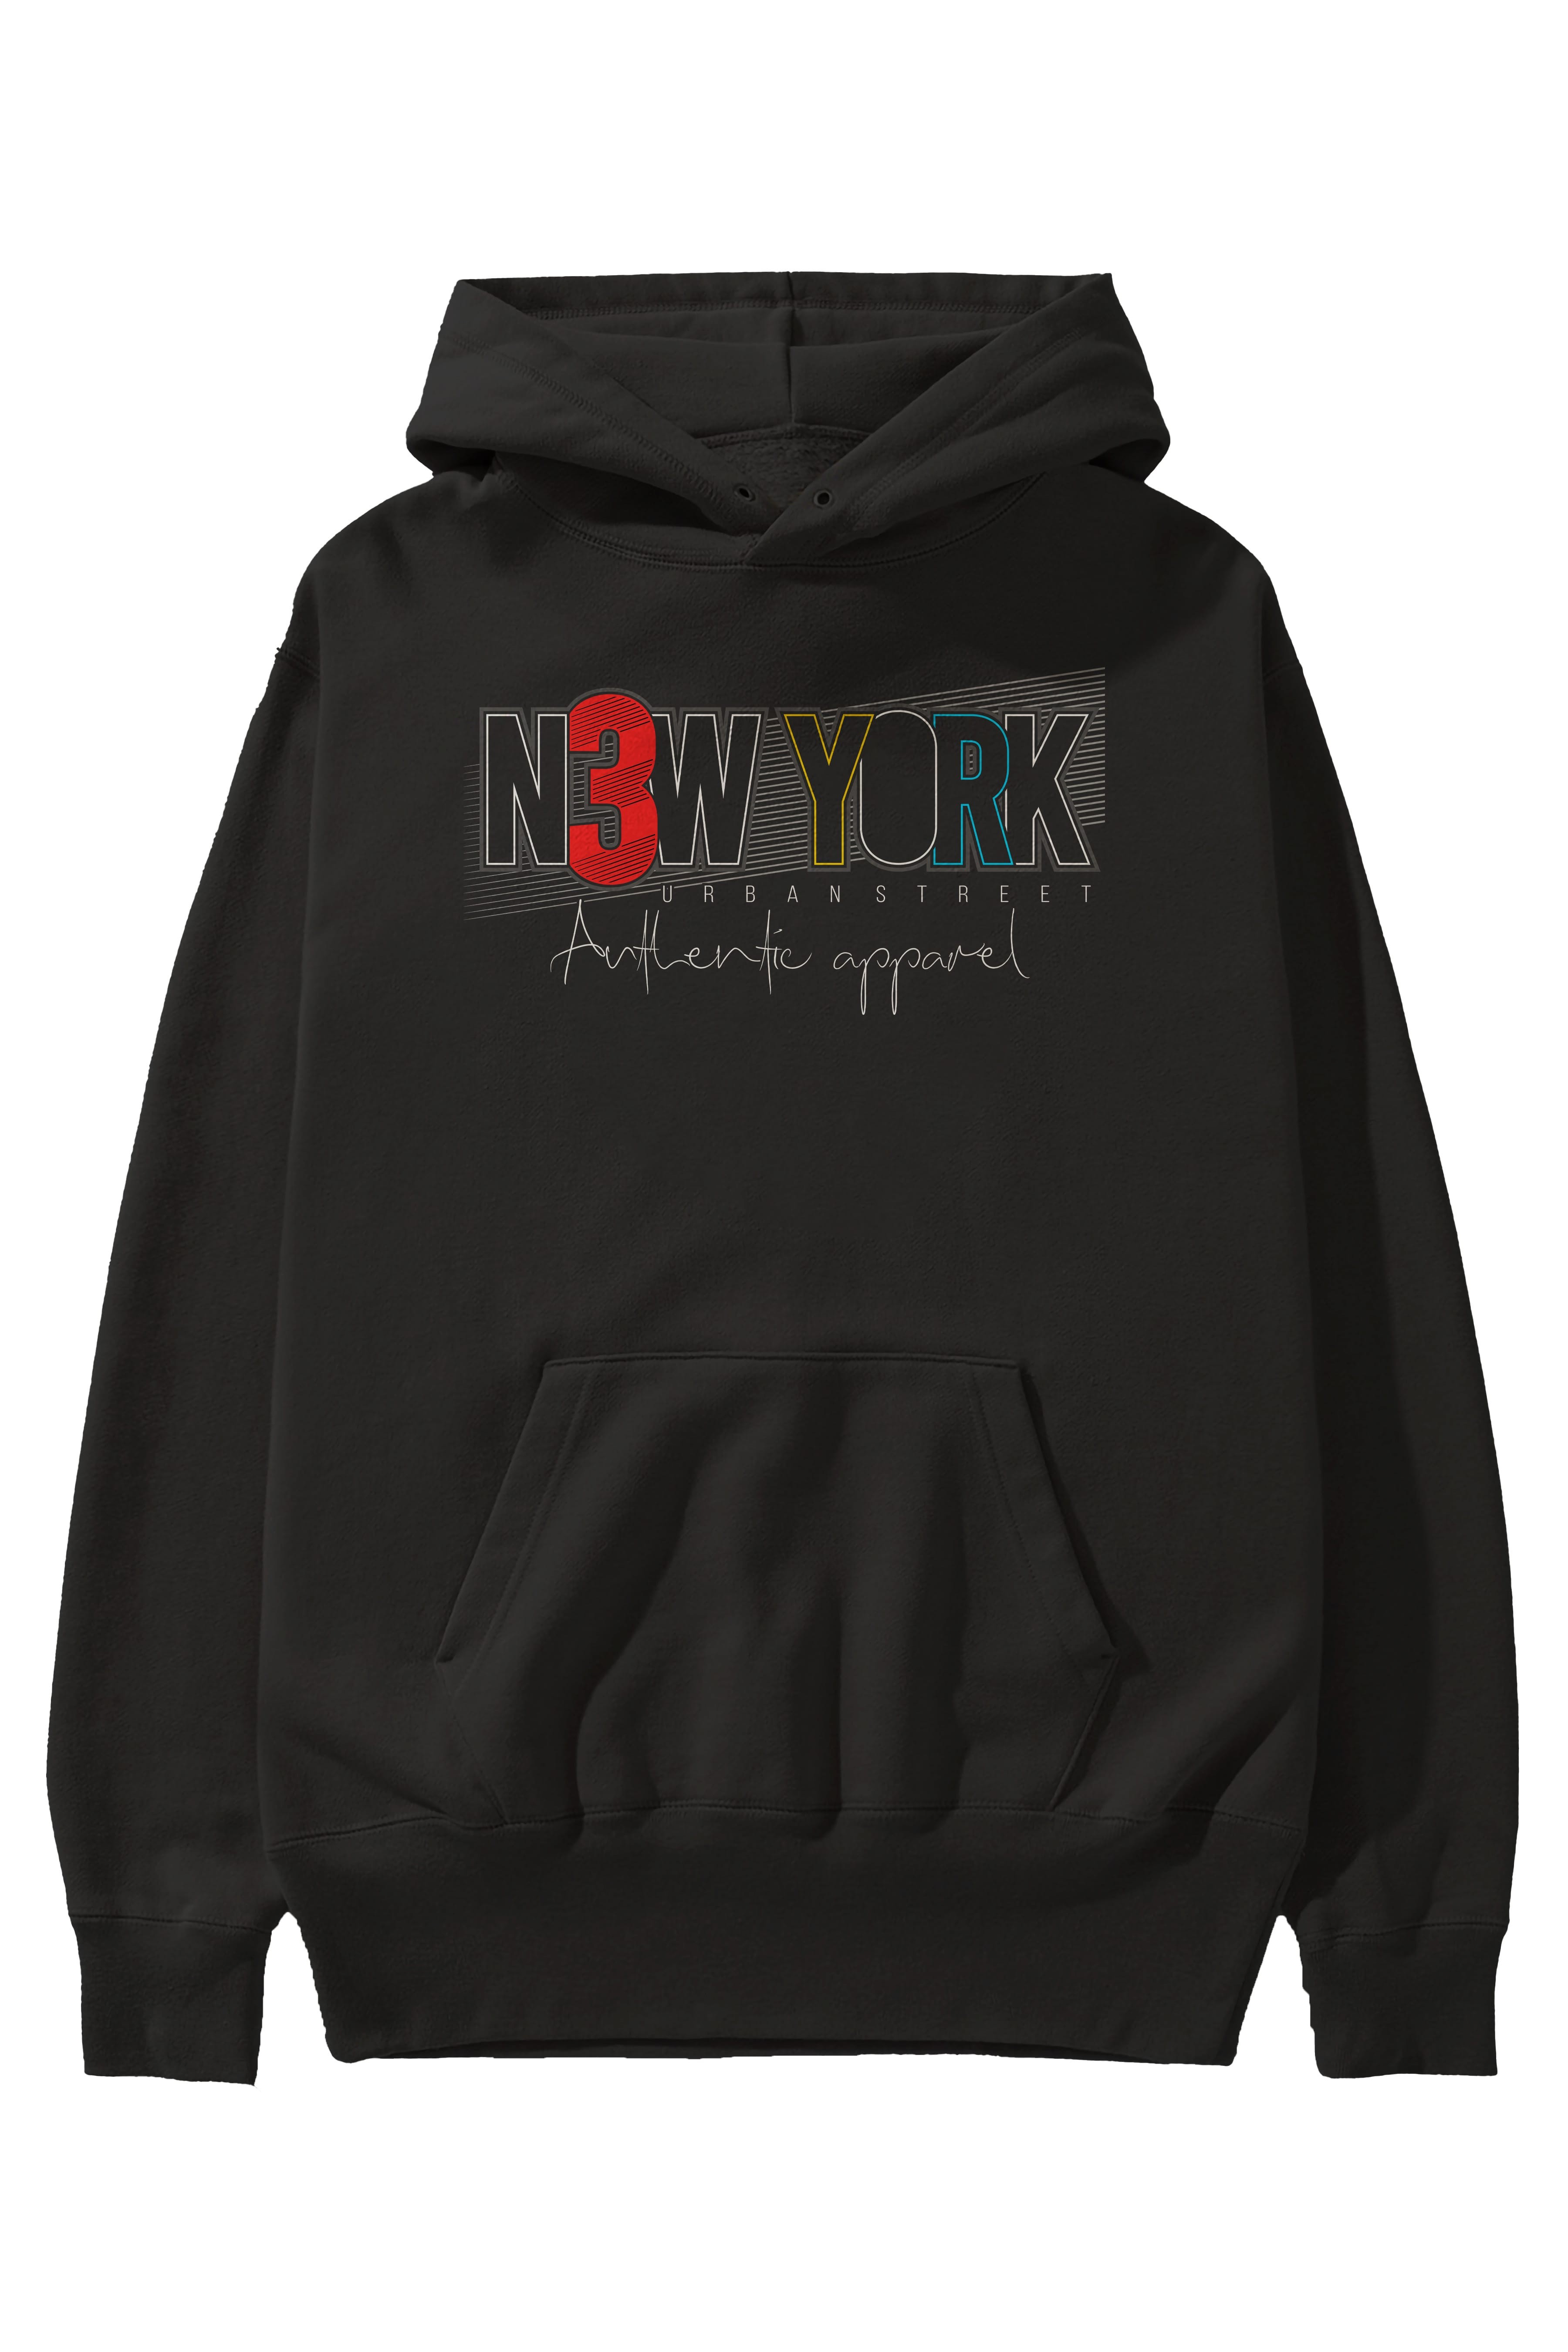 New York Ön Baskılı Oversize Hoodie Kapüşonlu Sweatshirt Erkek Kadın Unisex